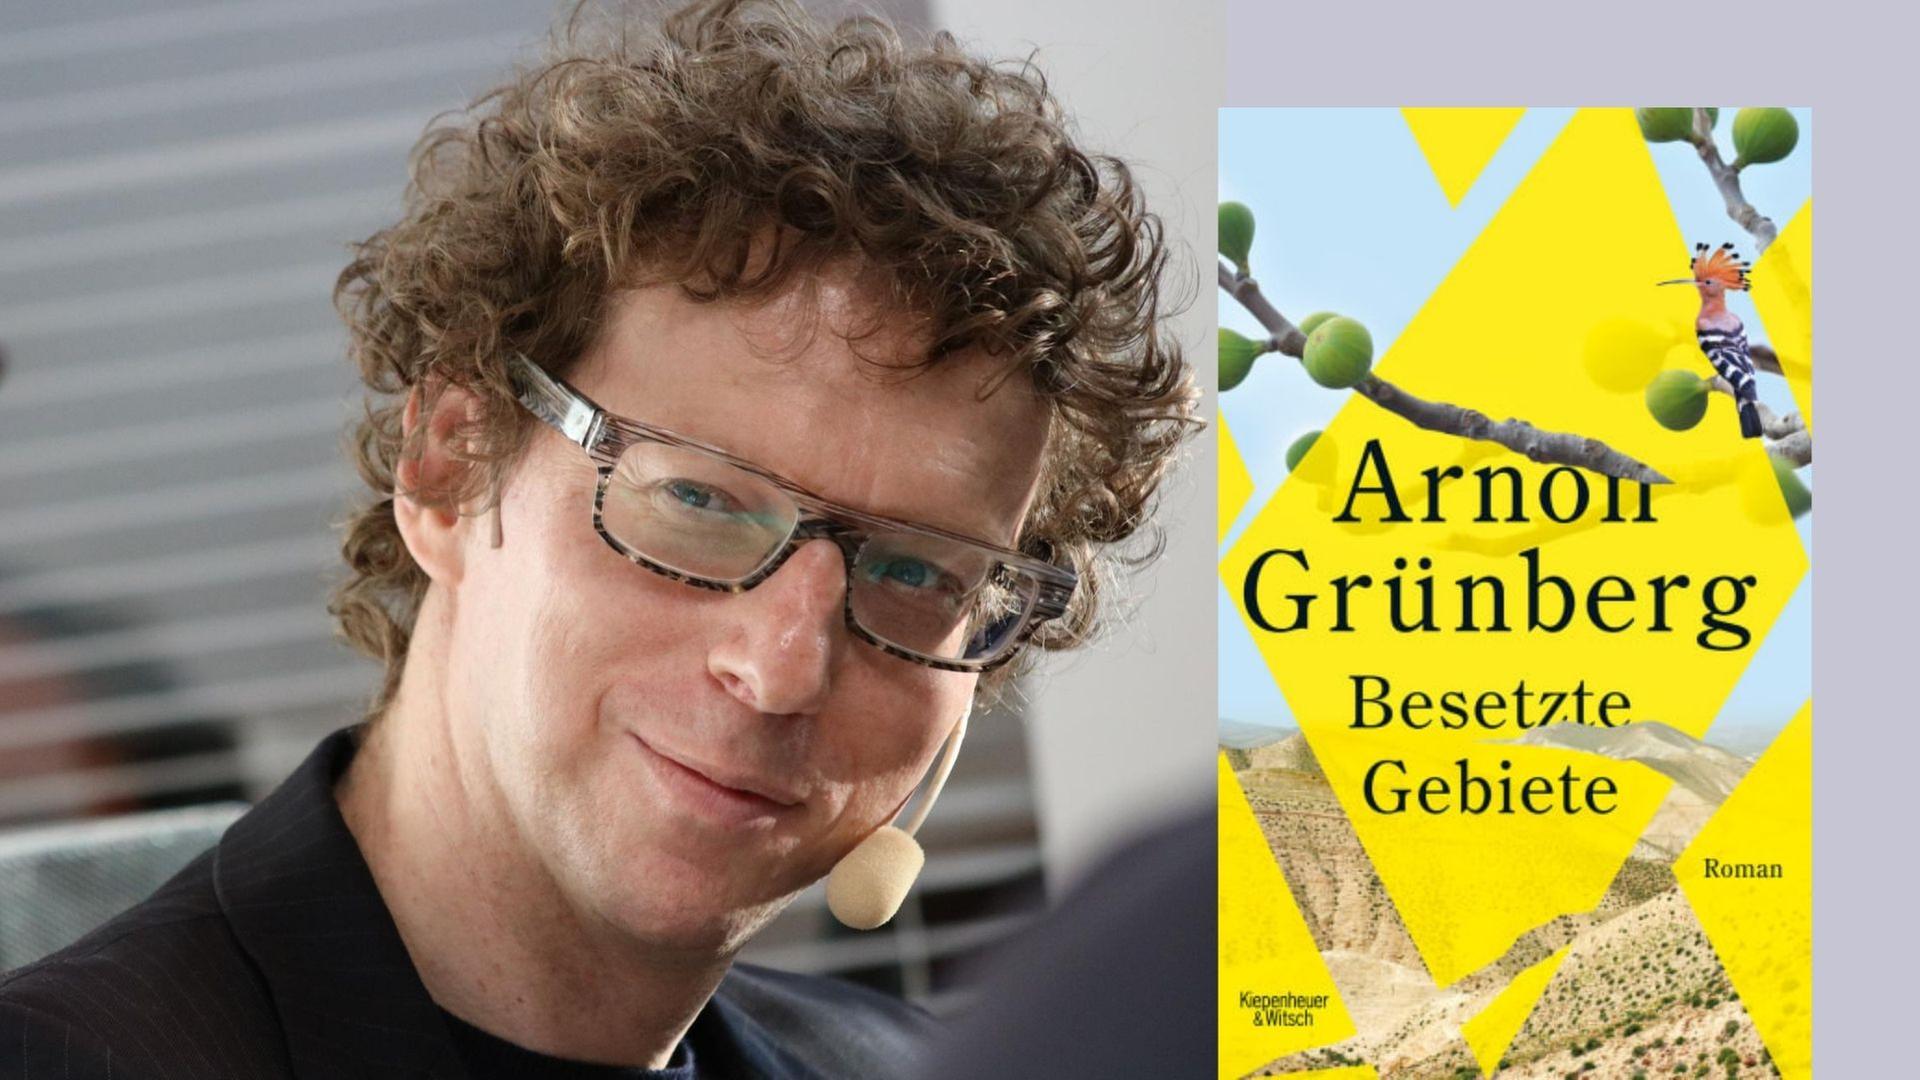 Der Schriftsteller Arnon Grünberg und sein Roman "Besetzte Gebiete"